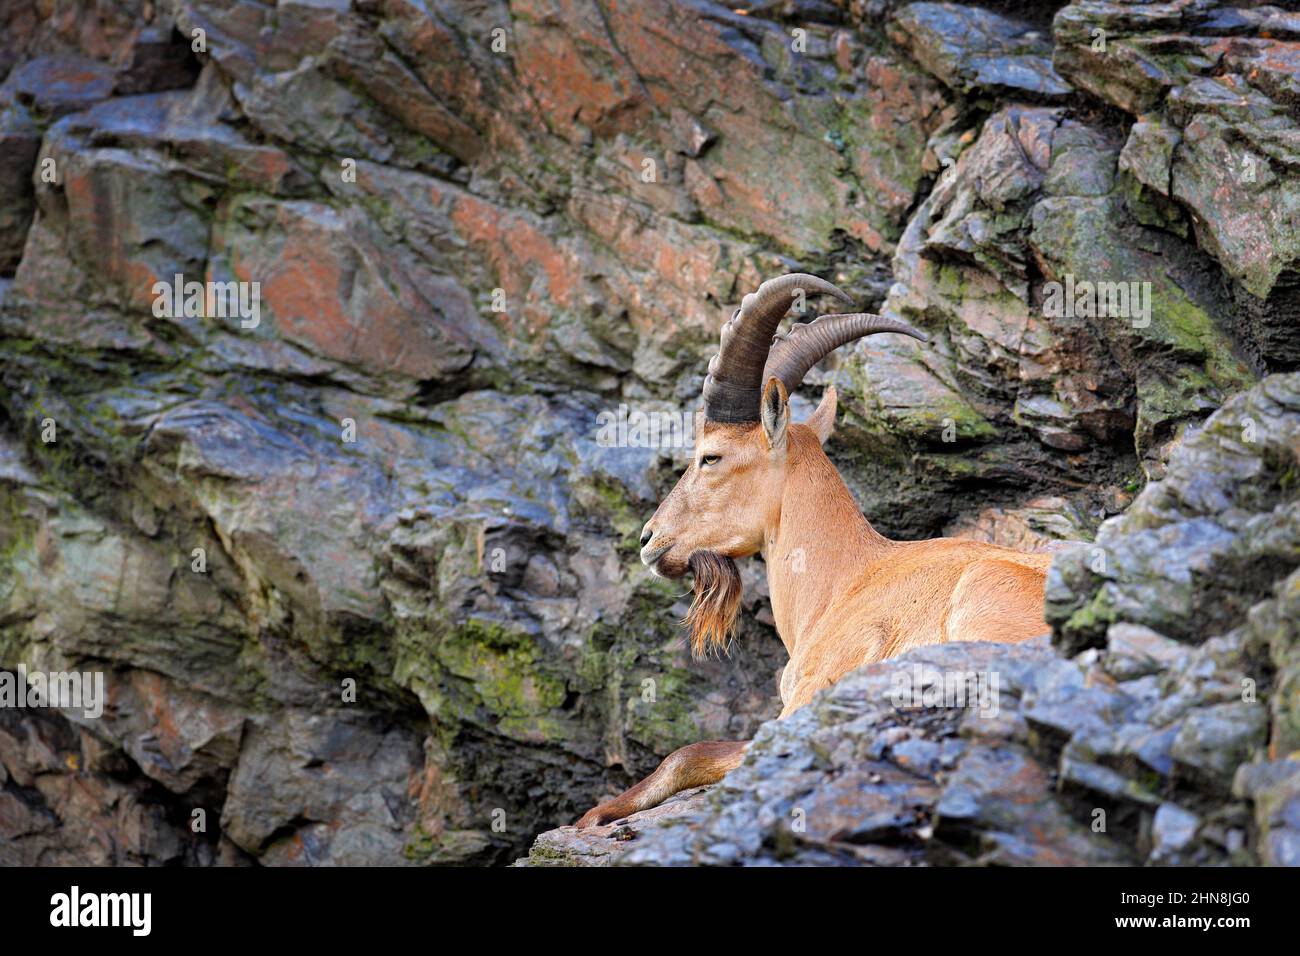 West Caucasian tur, Capra caucasica, sitting on the rock, endangered animal in the nature habitat, Caucasus Mountains, range description Georgia and R Stock Photo